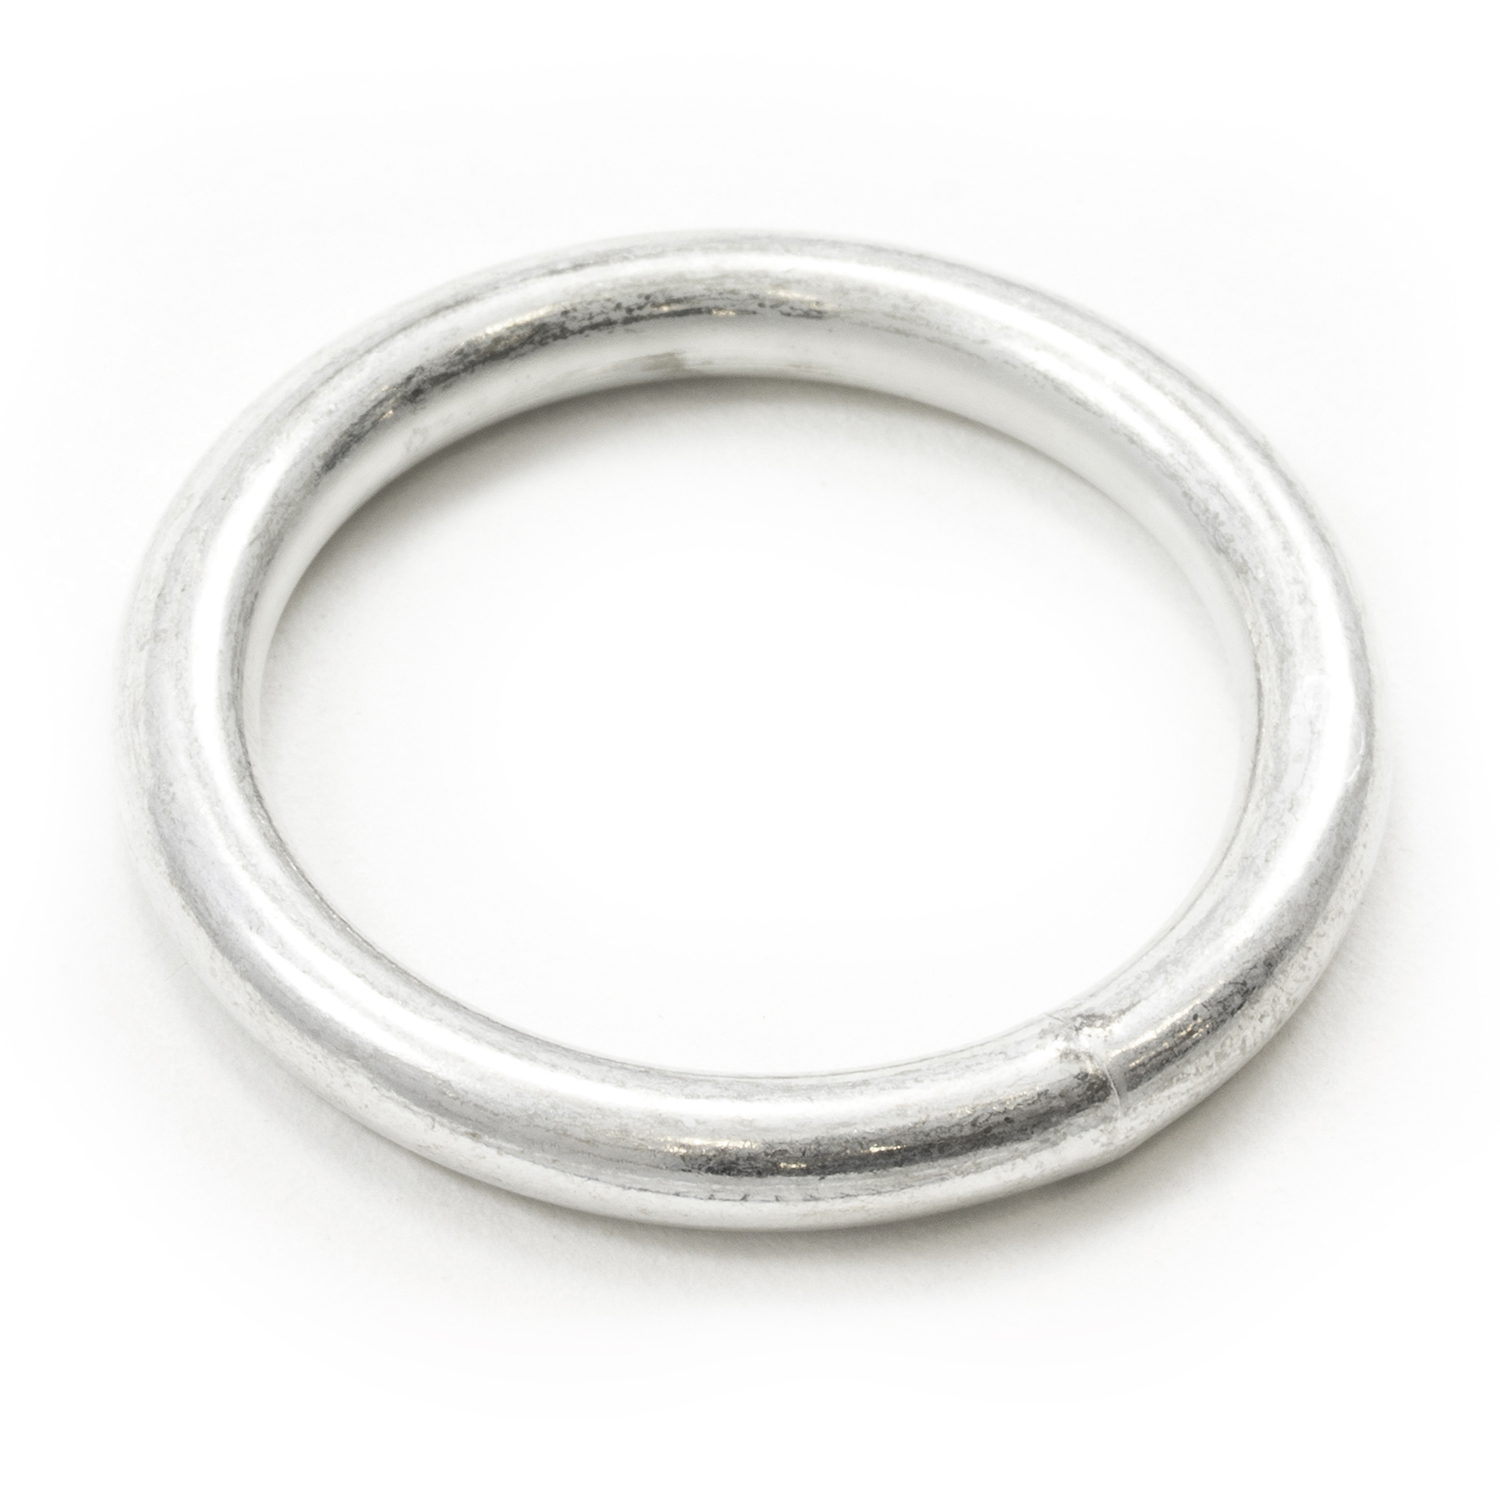 SPRING RING CLASP, 20mm Spring Gate Rings, Metal O Rings, Push Gate Snap  Hook | eBay